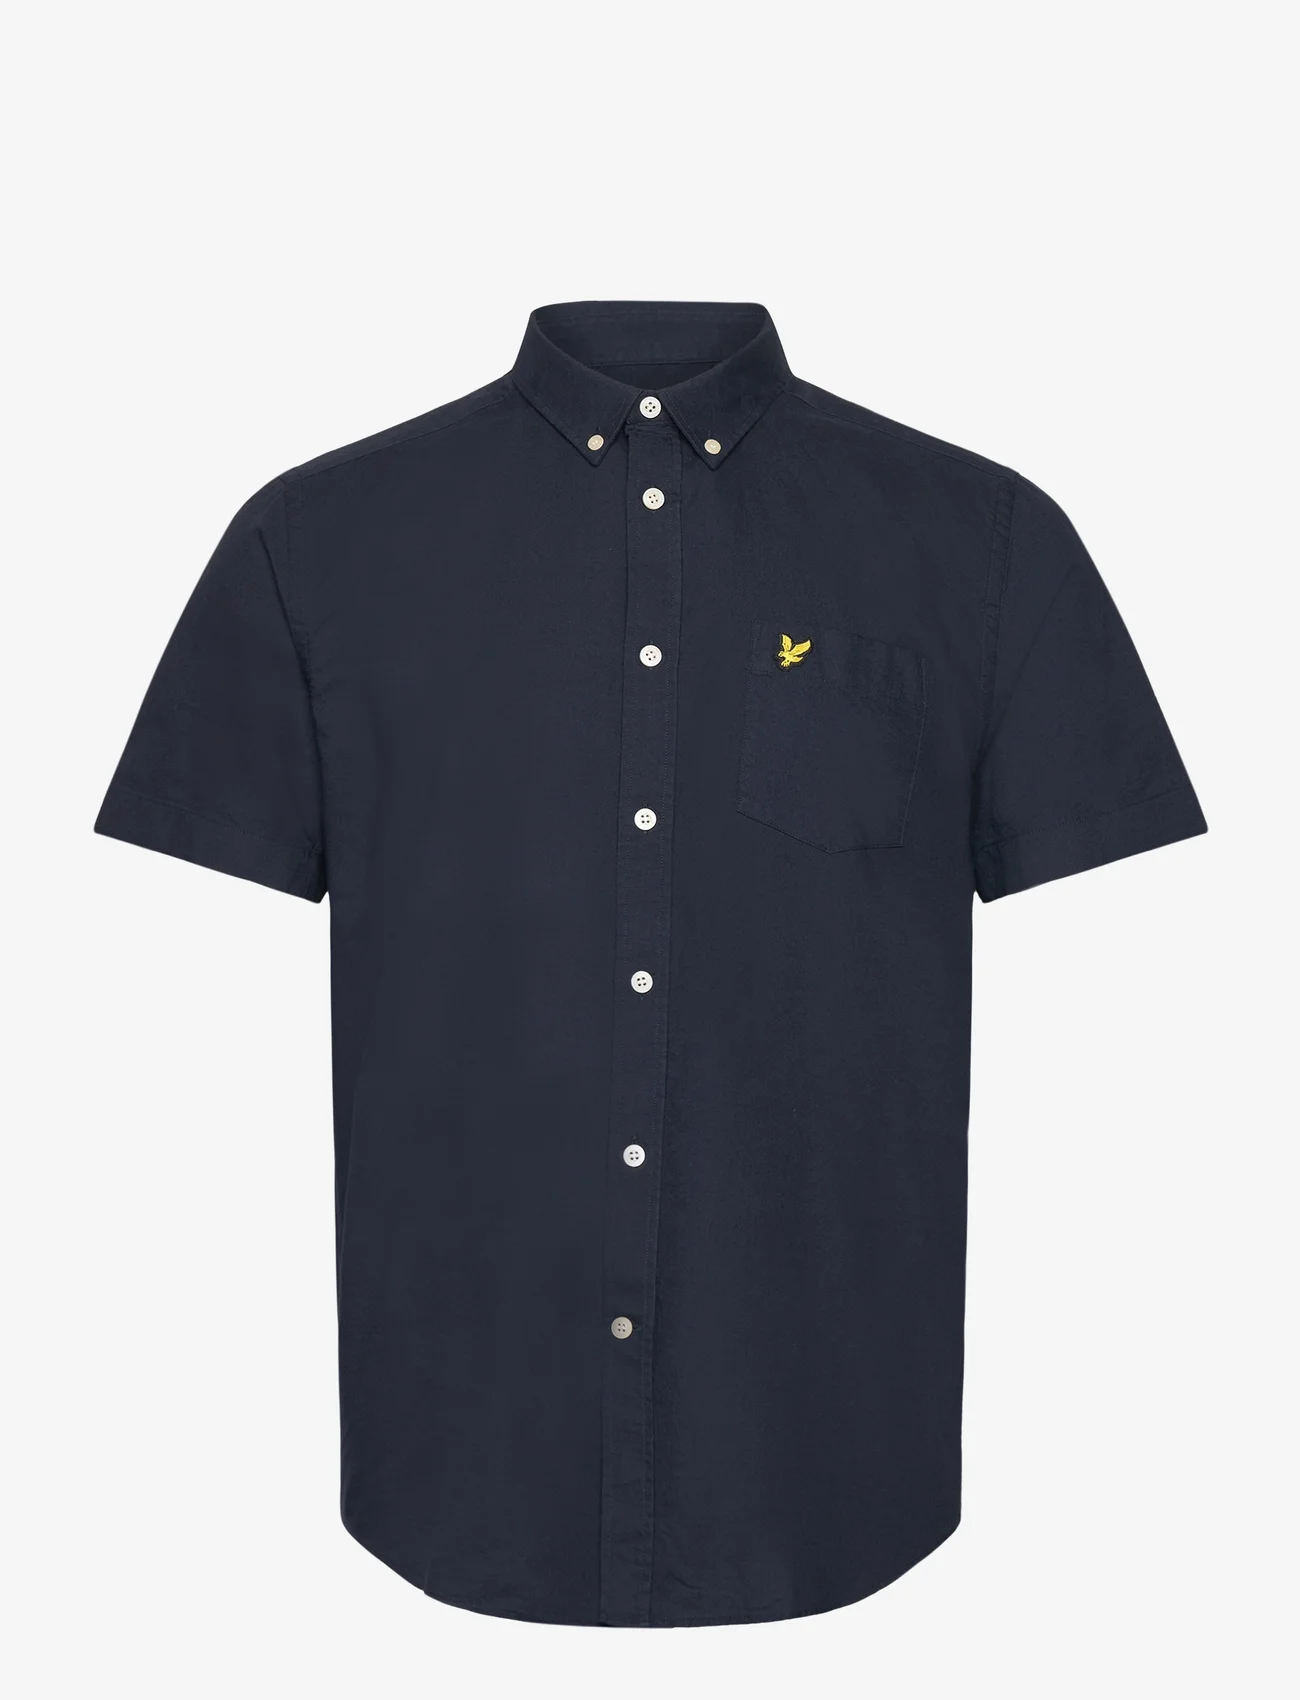 Lyle & Scott - Short Sleeve Oxford Shirt - oxford skjorter - z271 dark navy - 0